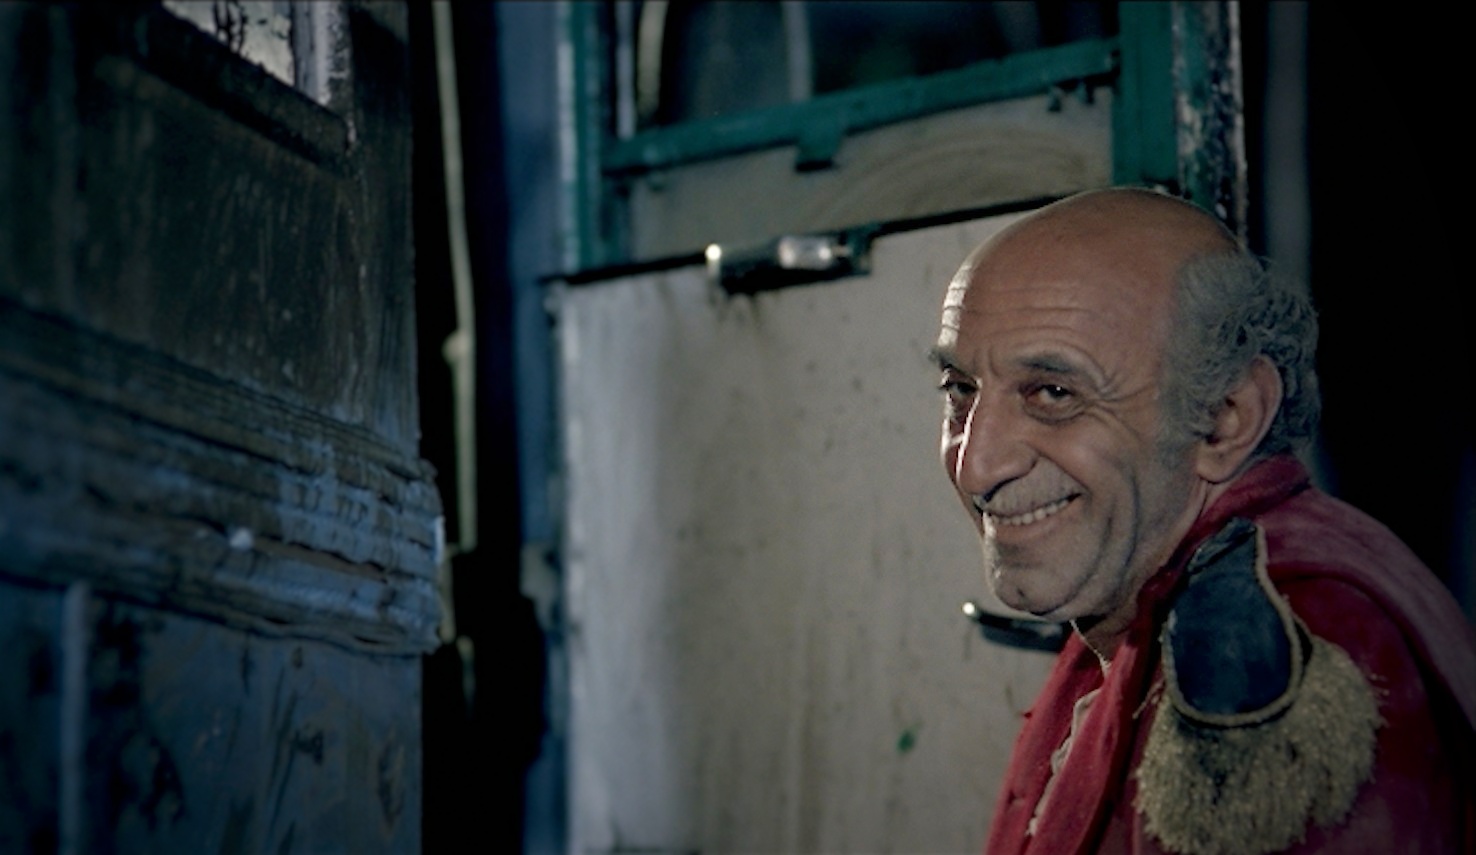 Σινεμά. “Όλο γελούσε”, μία ταινία του Θόδωρου Μαραγκού για τον ηθοποιό Κώστα Τσάκωνα